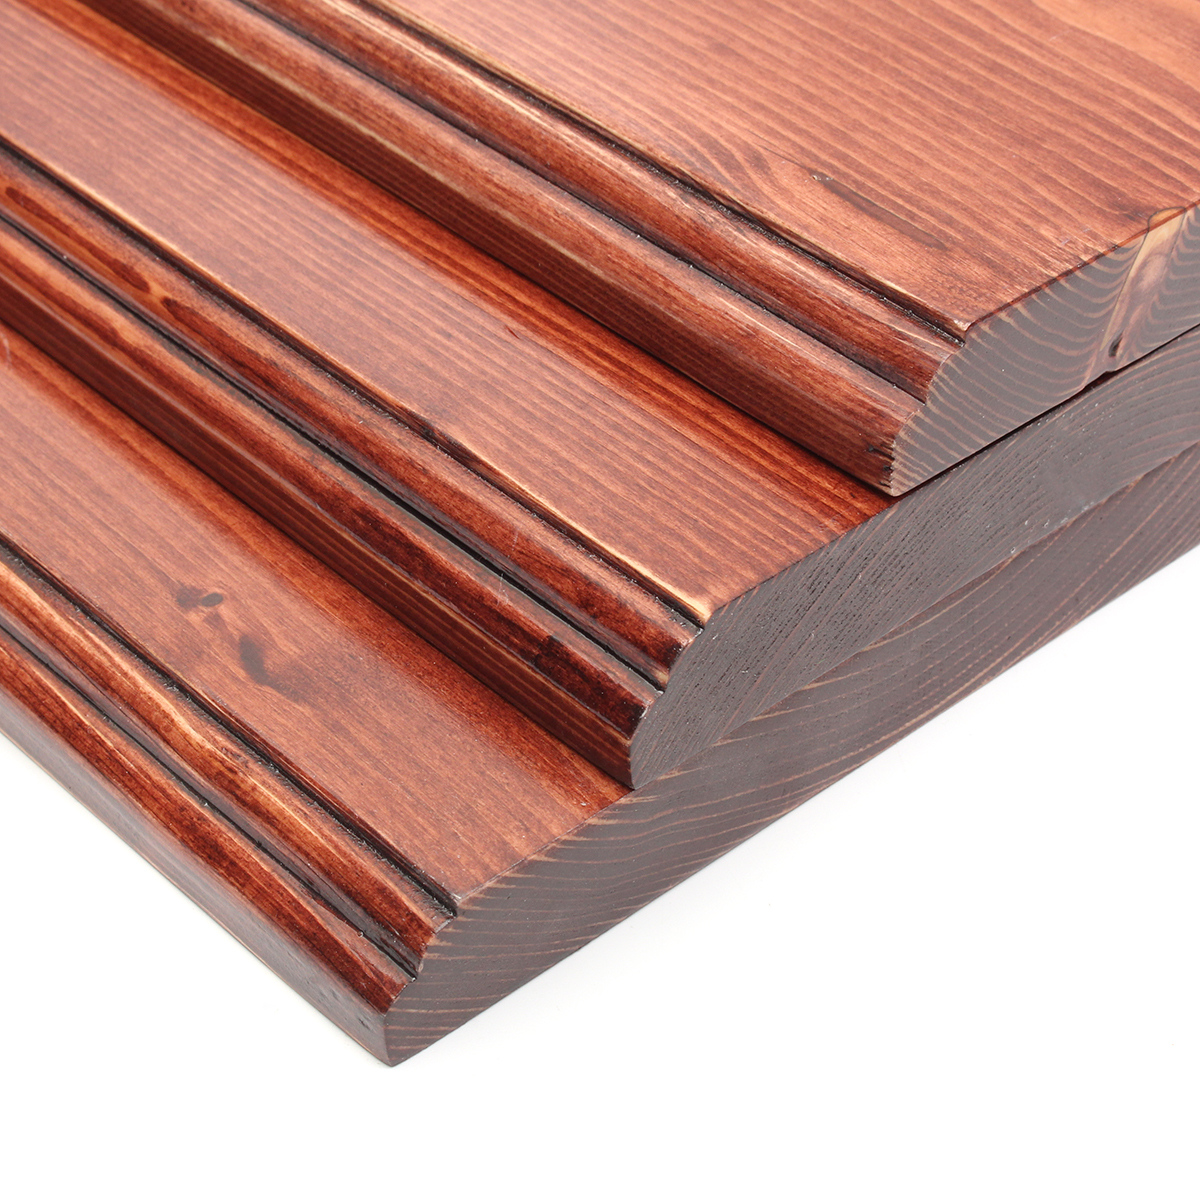 3Pcs-406080cm-Wooden-Board-Shelves-Wall-Mount-Floating-Shelf-Display-Bracket-Waterproof-Decor-1390599-9